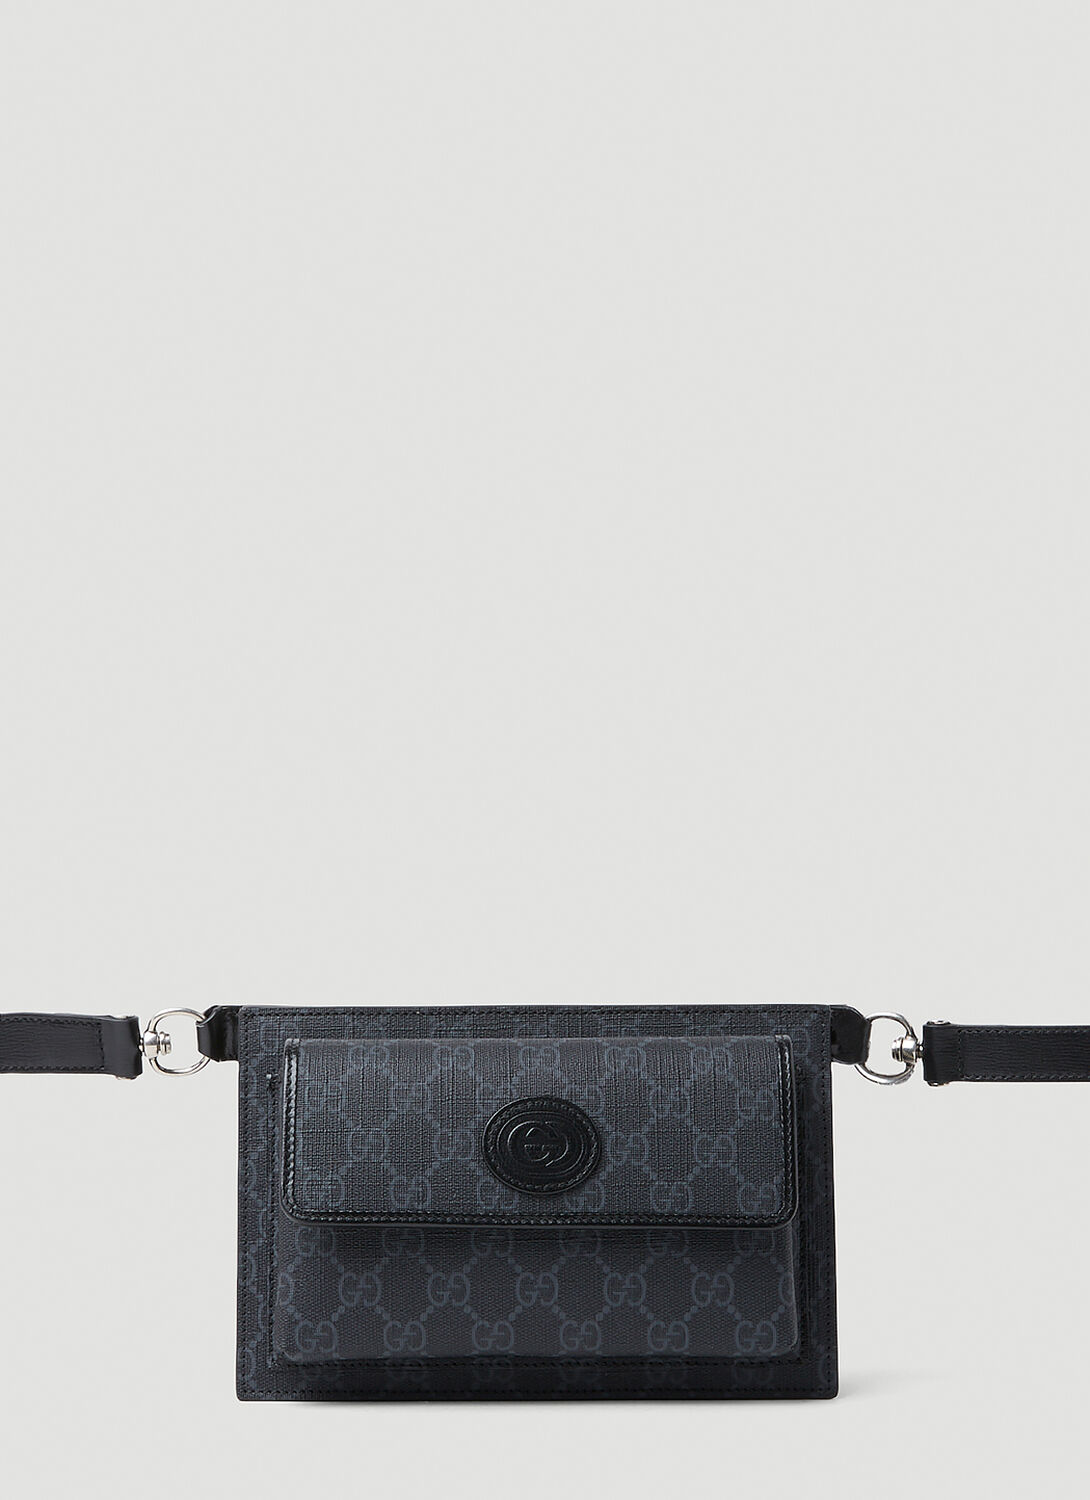 Shop Gucci Gg Supreme Belt Bag In Black